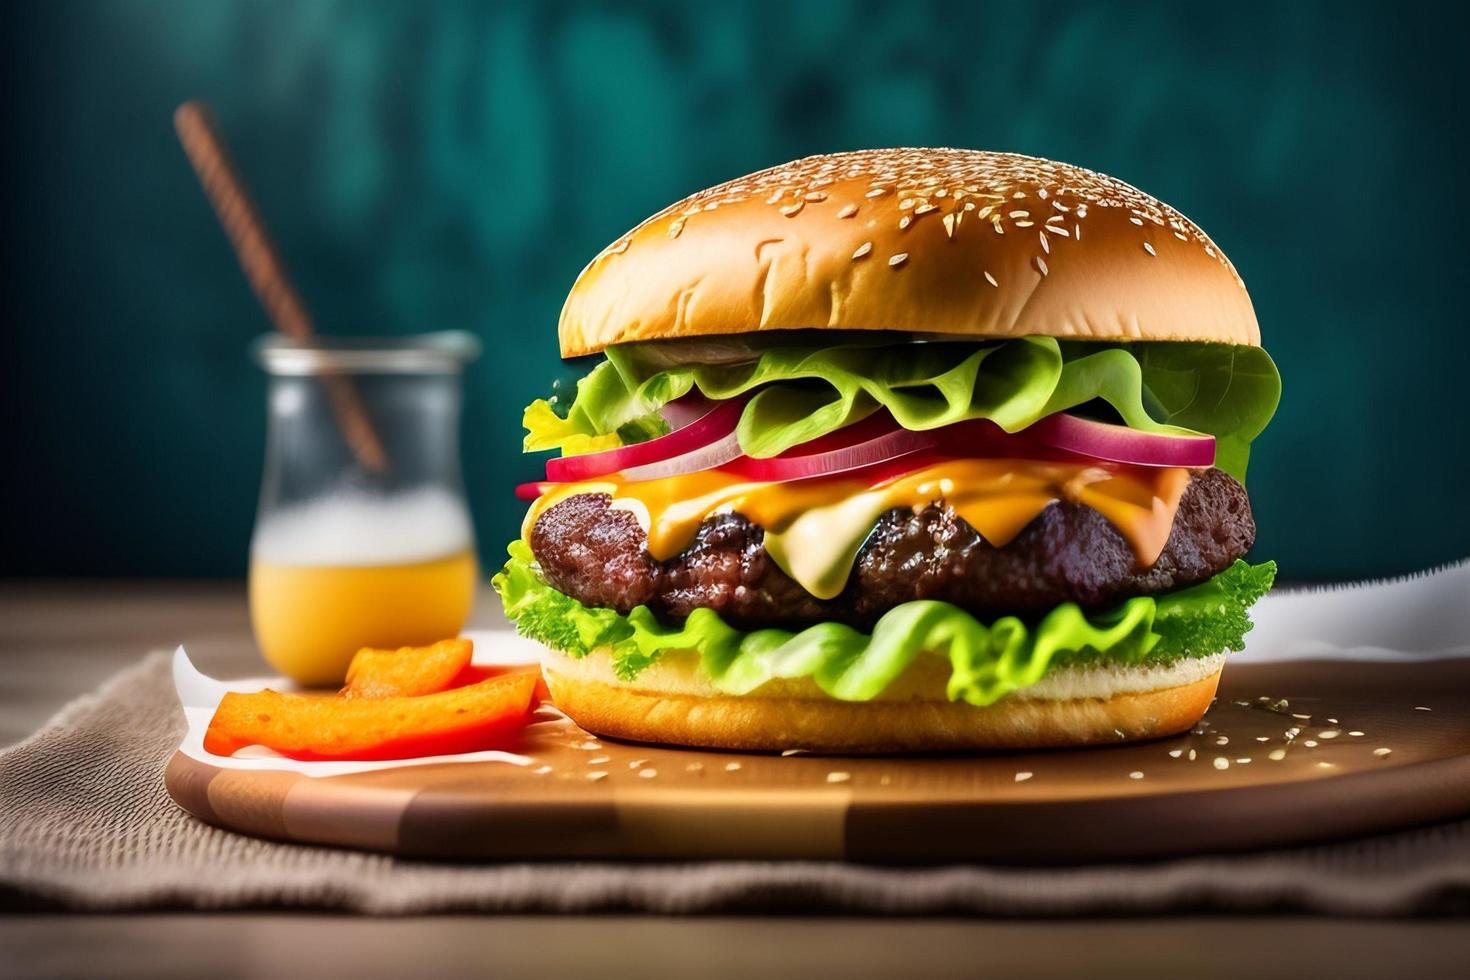 Vorderansicht leckerer Fleischburger mit Käse und Salat foto